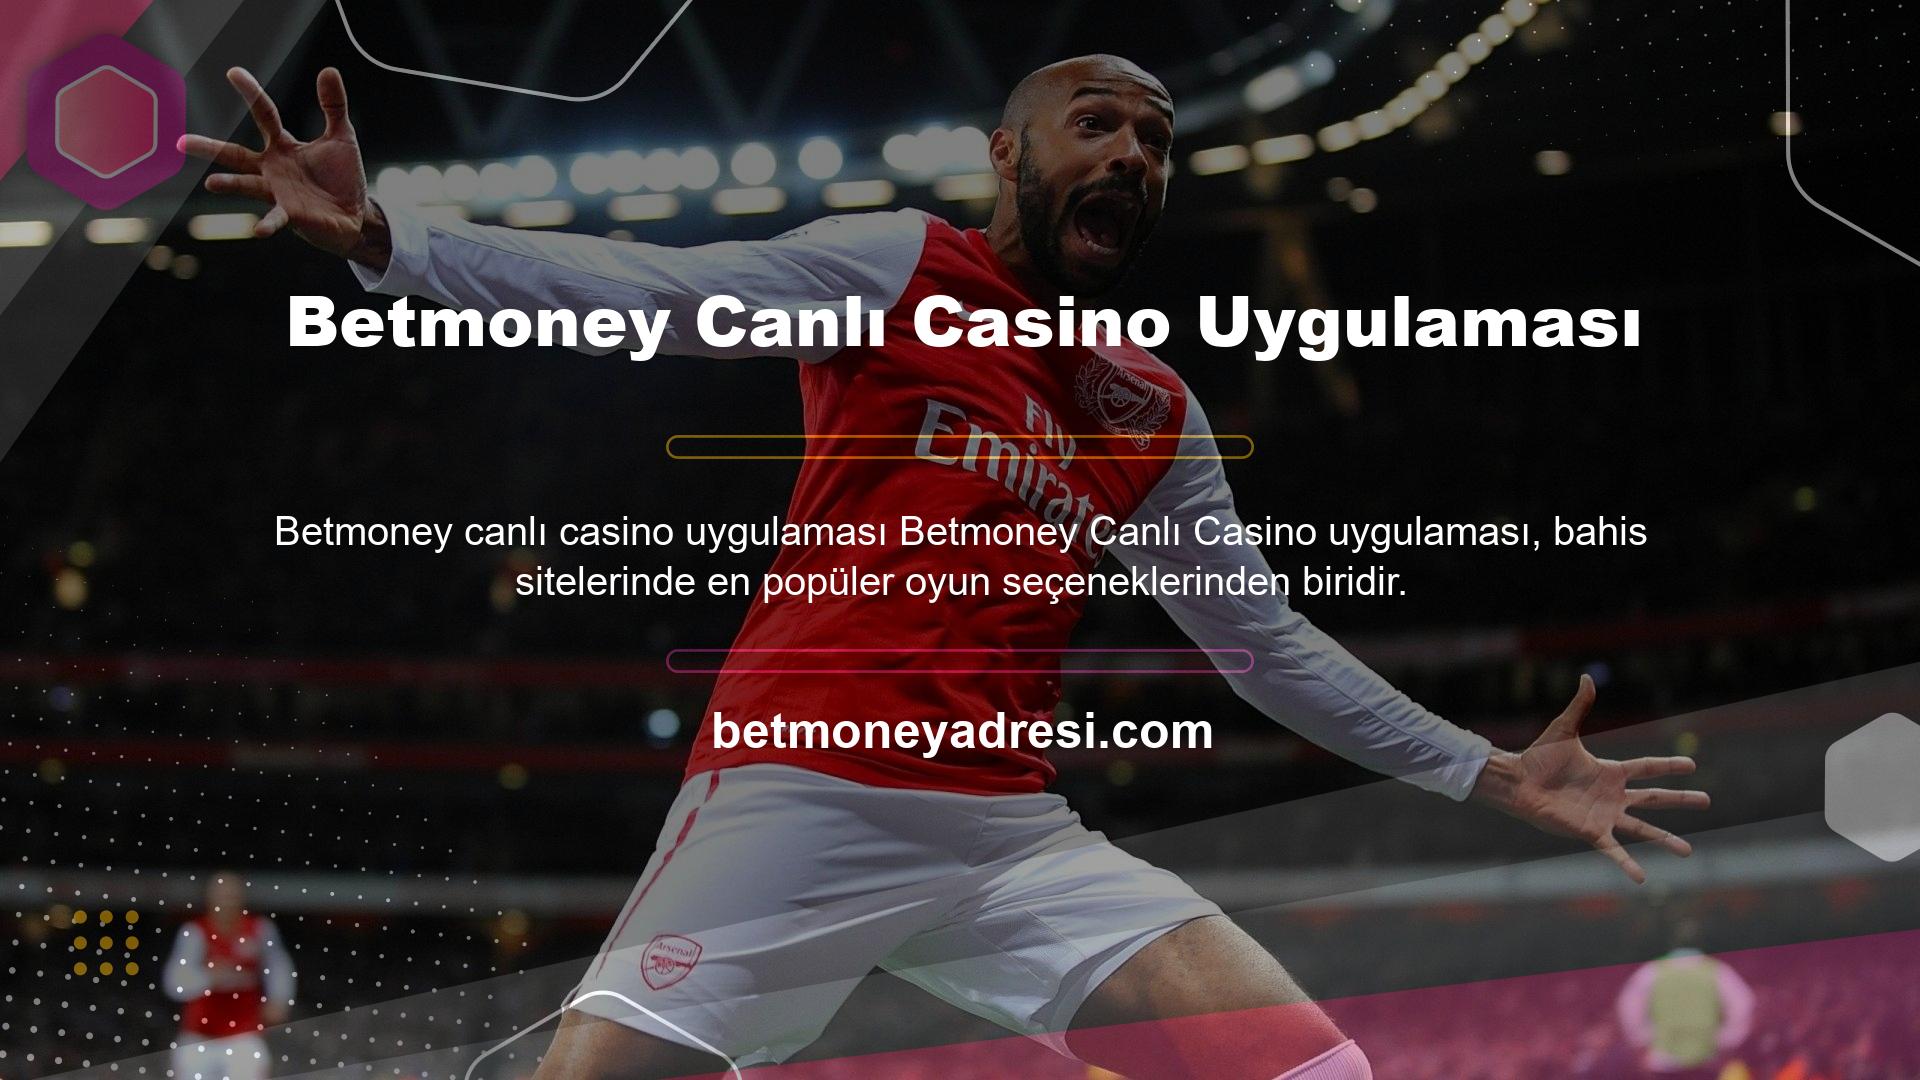 Betmoney Canlı Casino Uygulaması